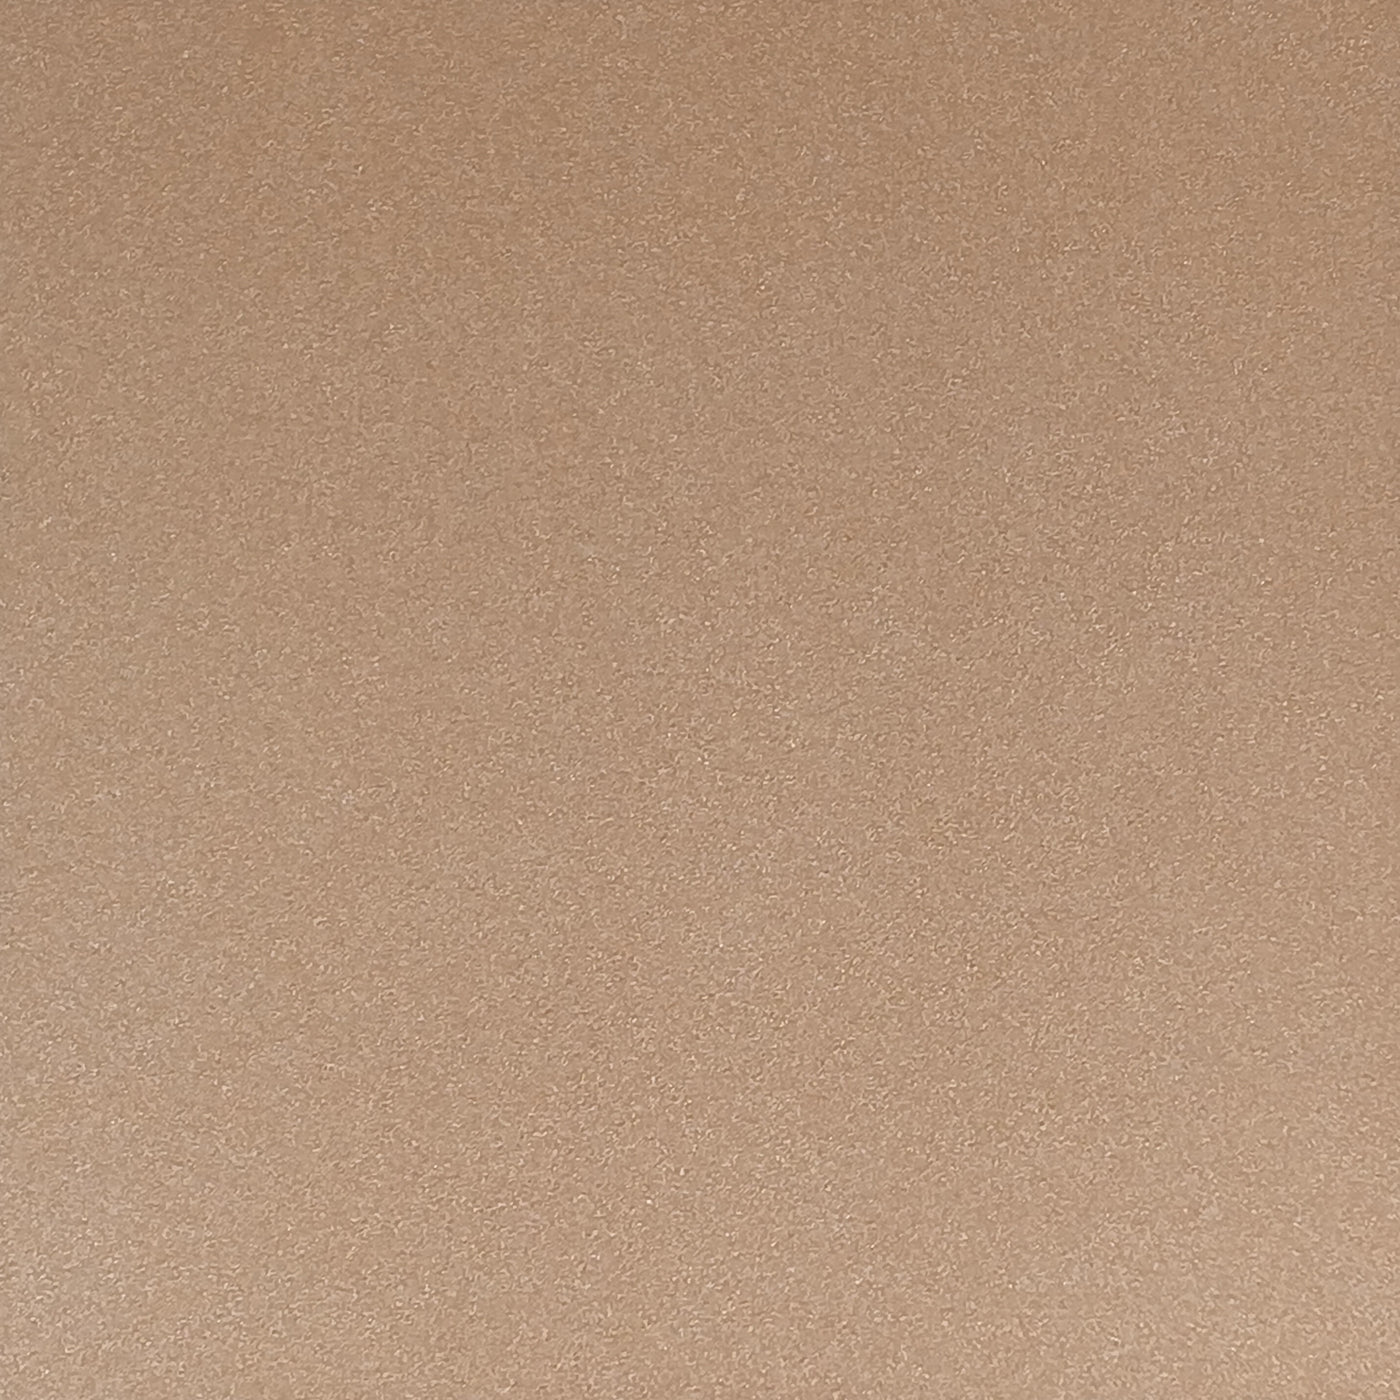 Mirri Sparkle Desert Sand Cardstock paper with fine beige glitter.